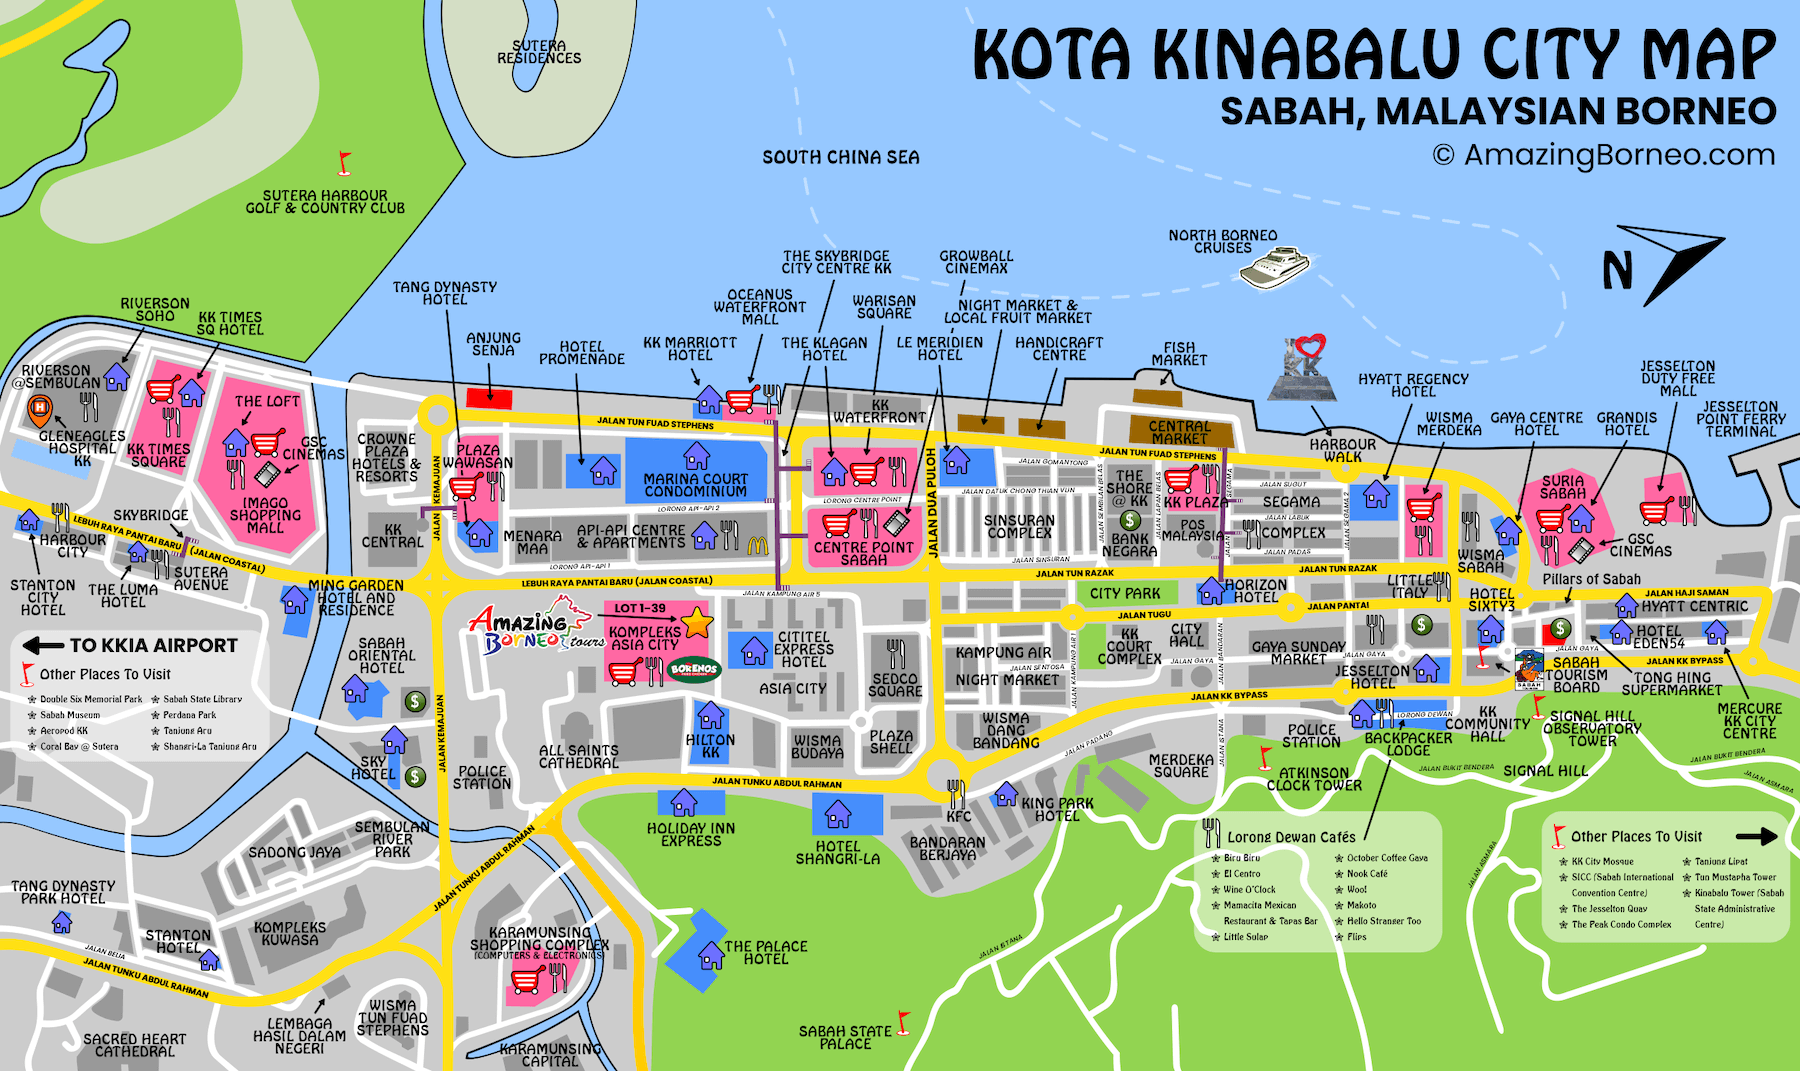 Kota Kinabalu City Map - Sabah Malaysian Borneo